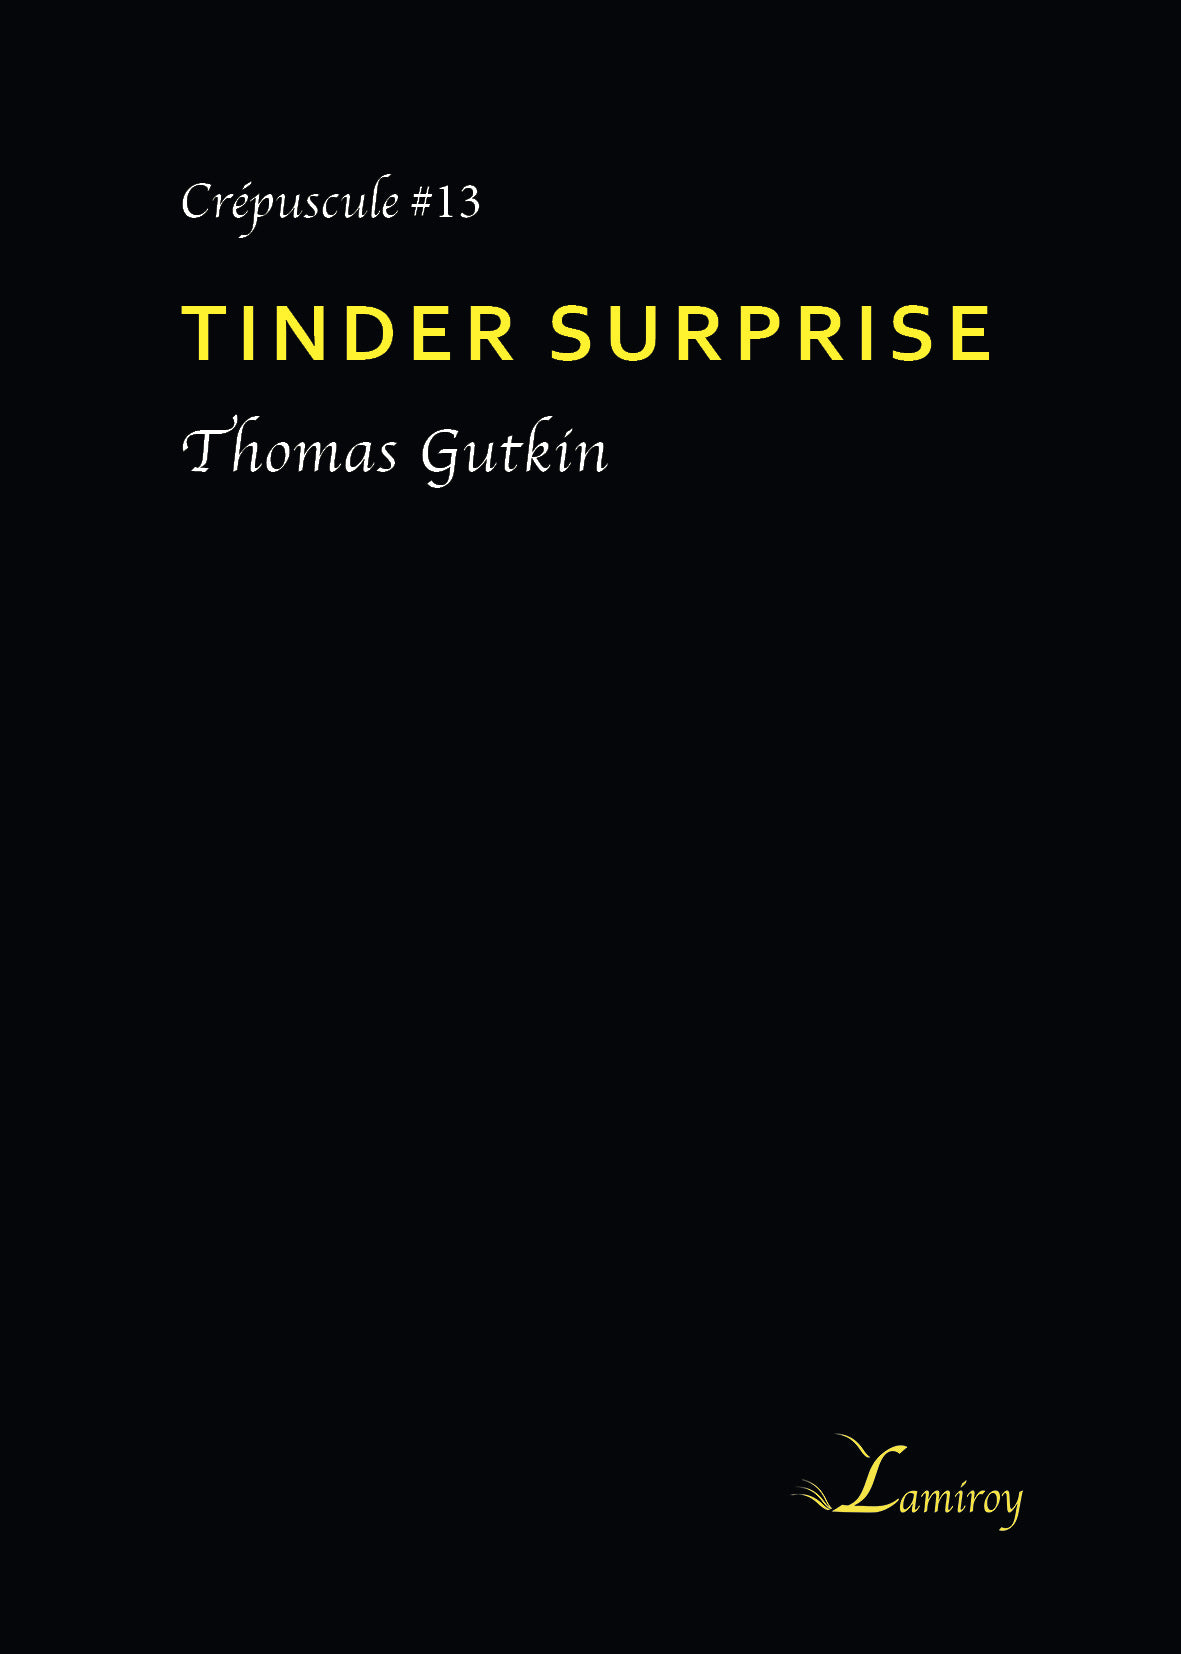 Tinder surprise C#13